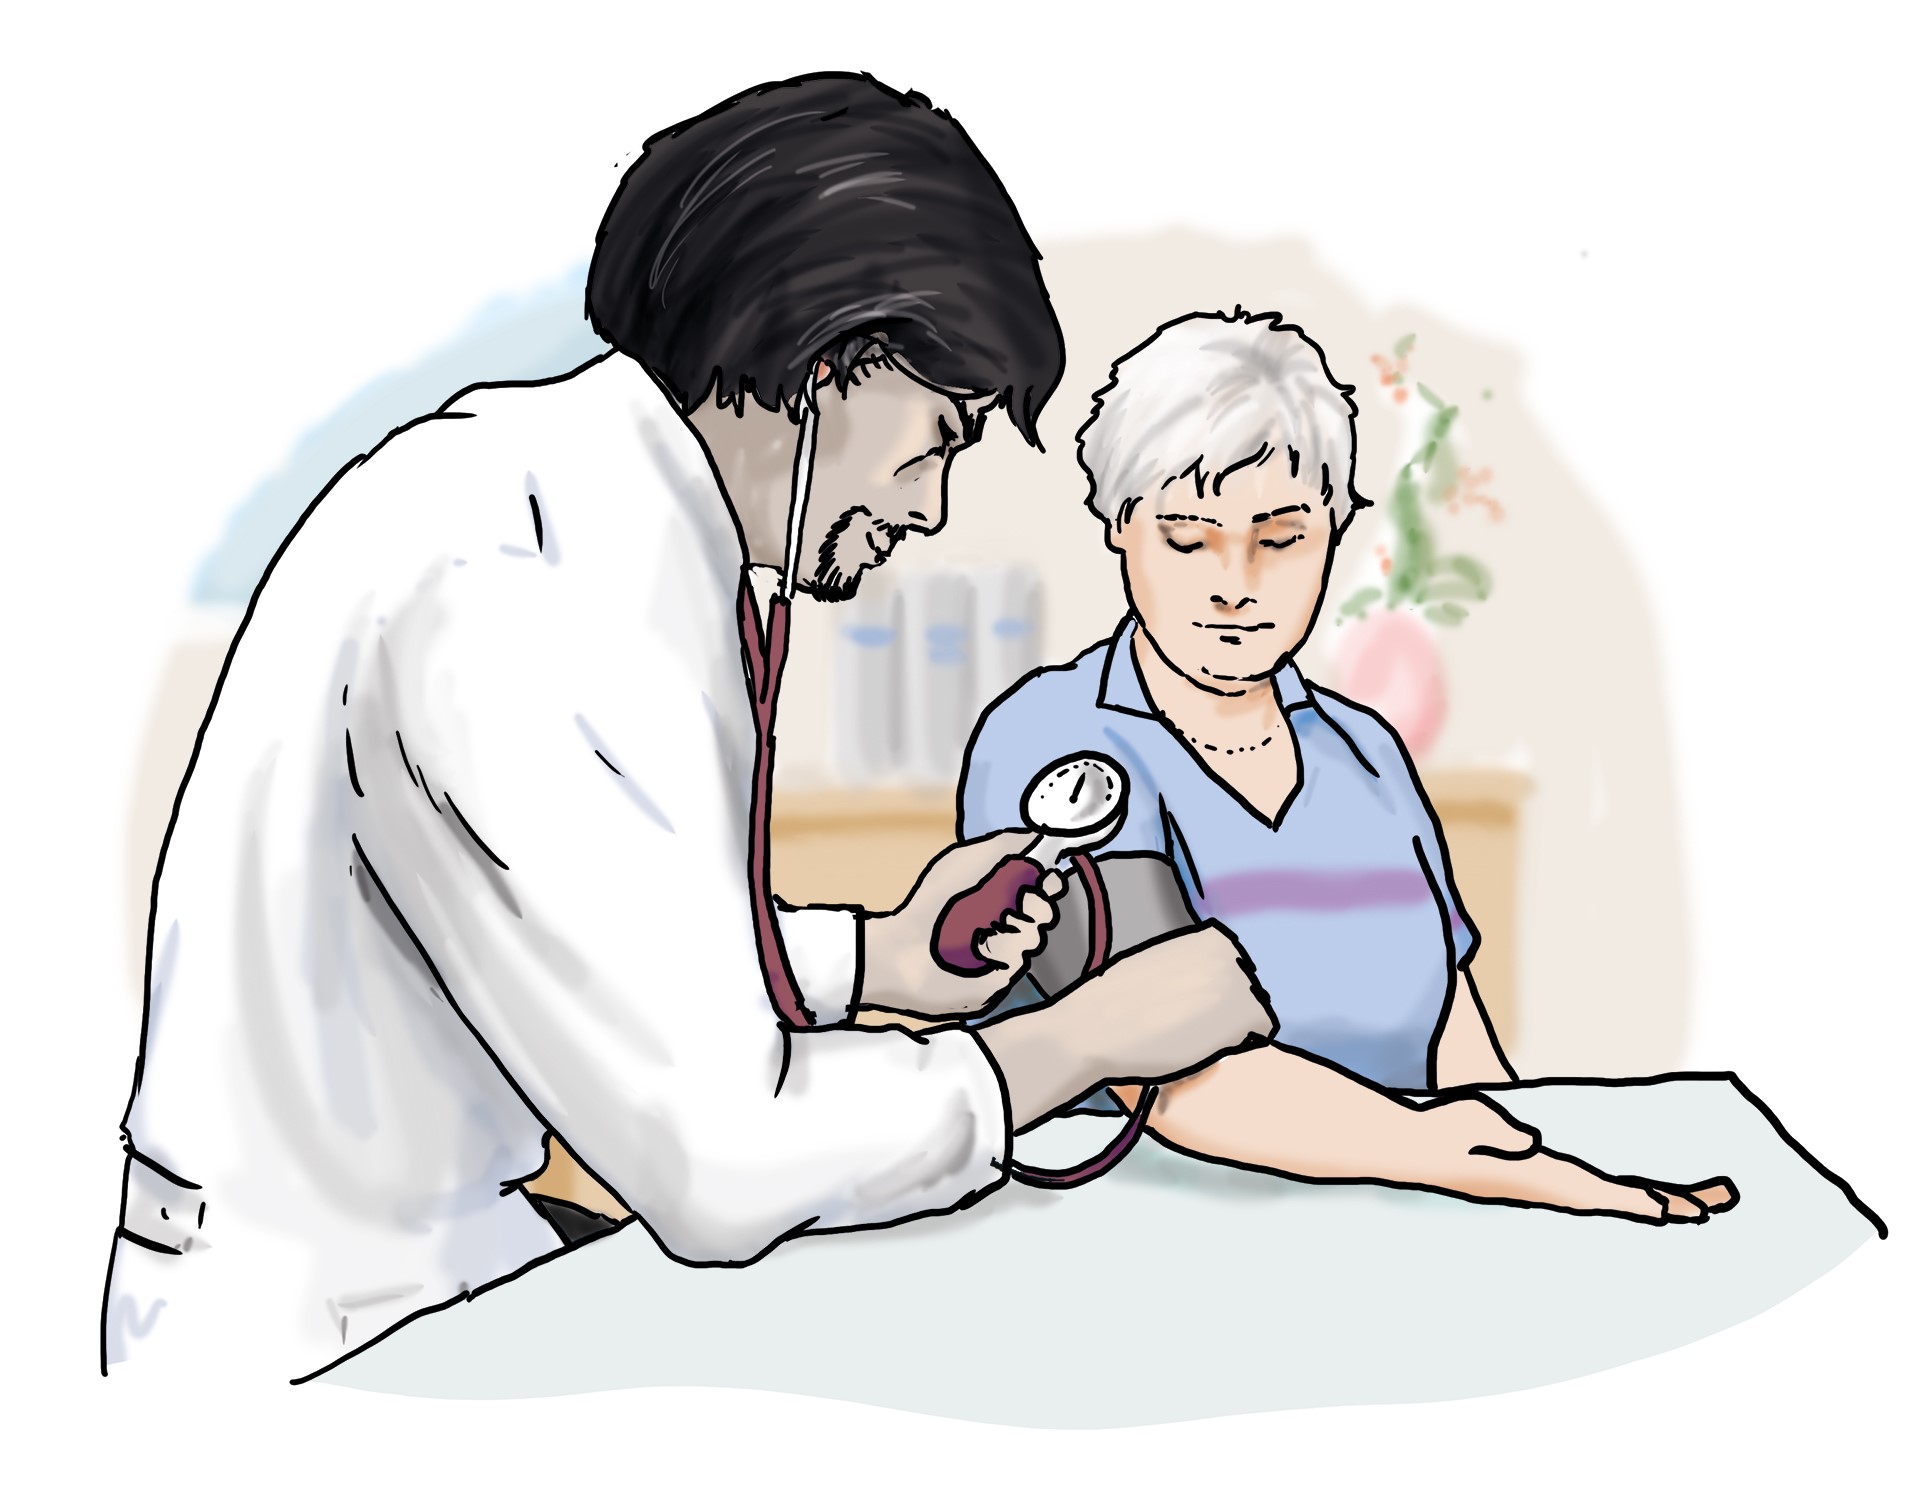 Arzt misst den Blutdruck von Patientin